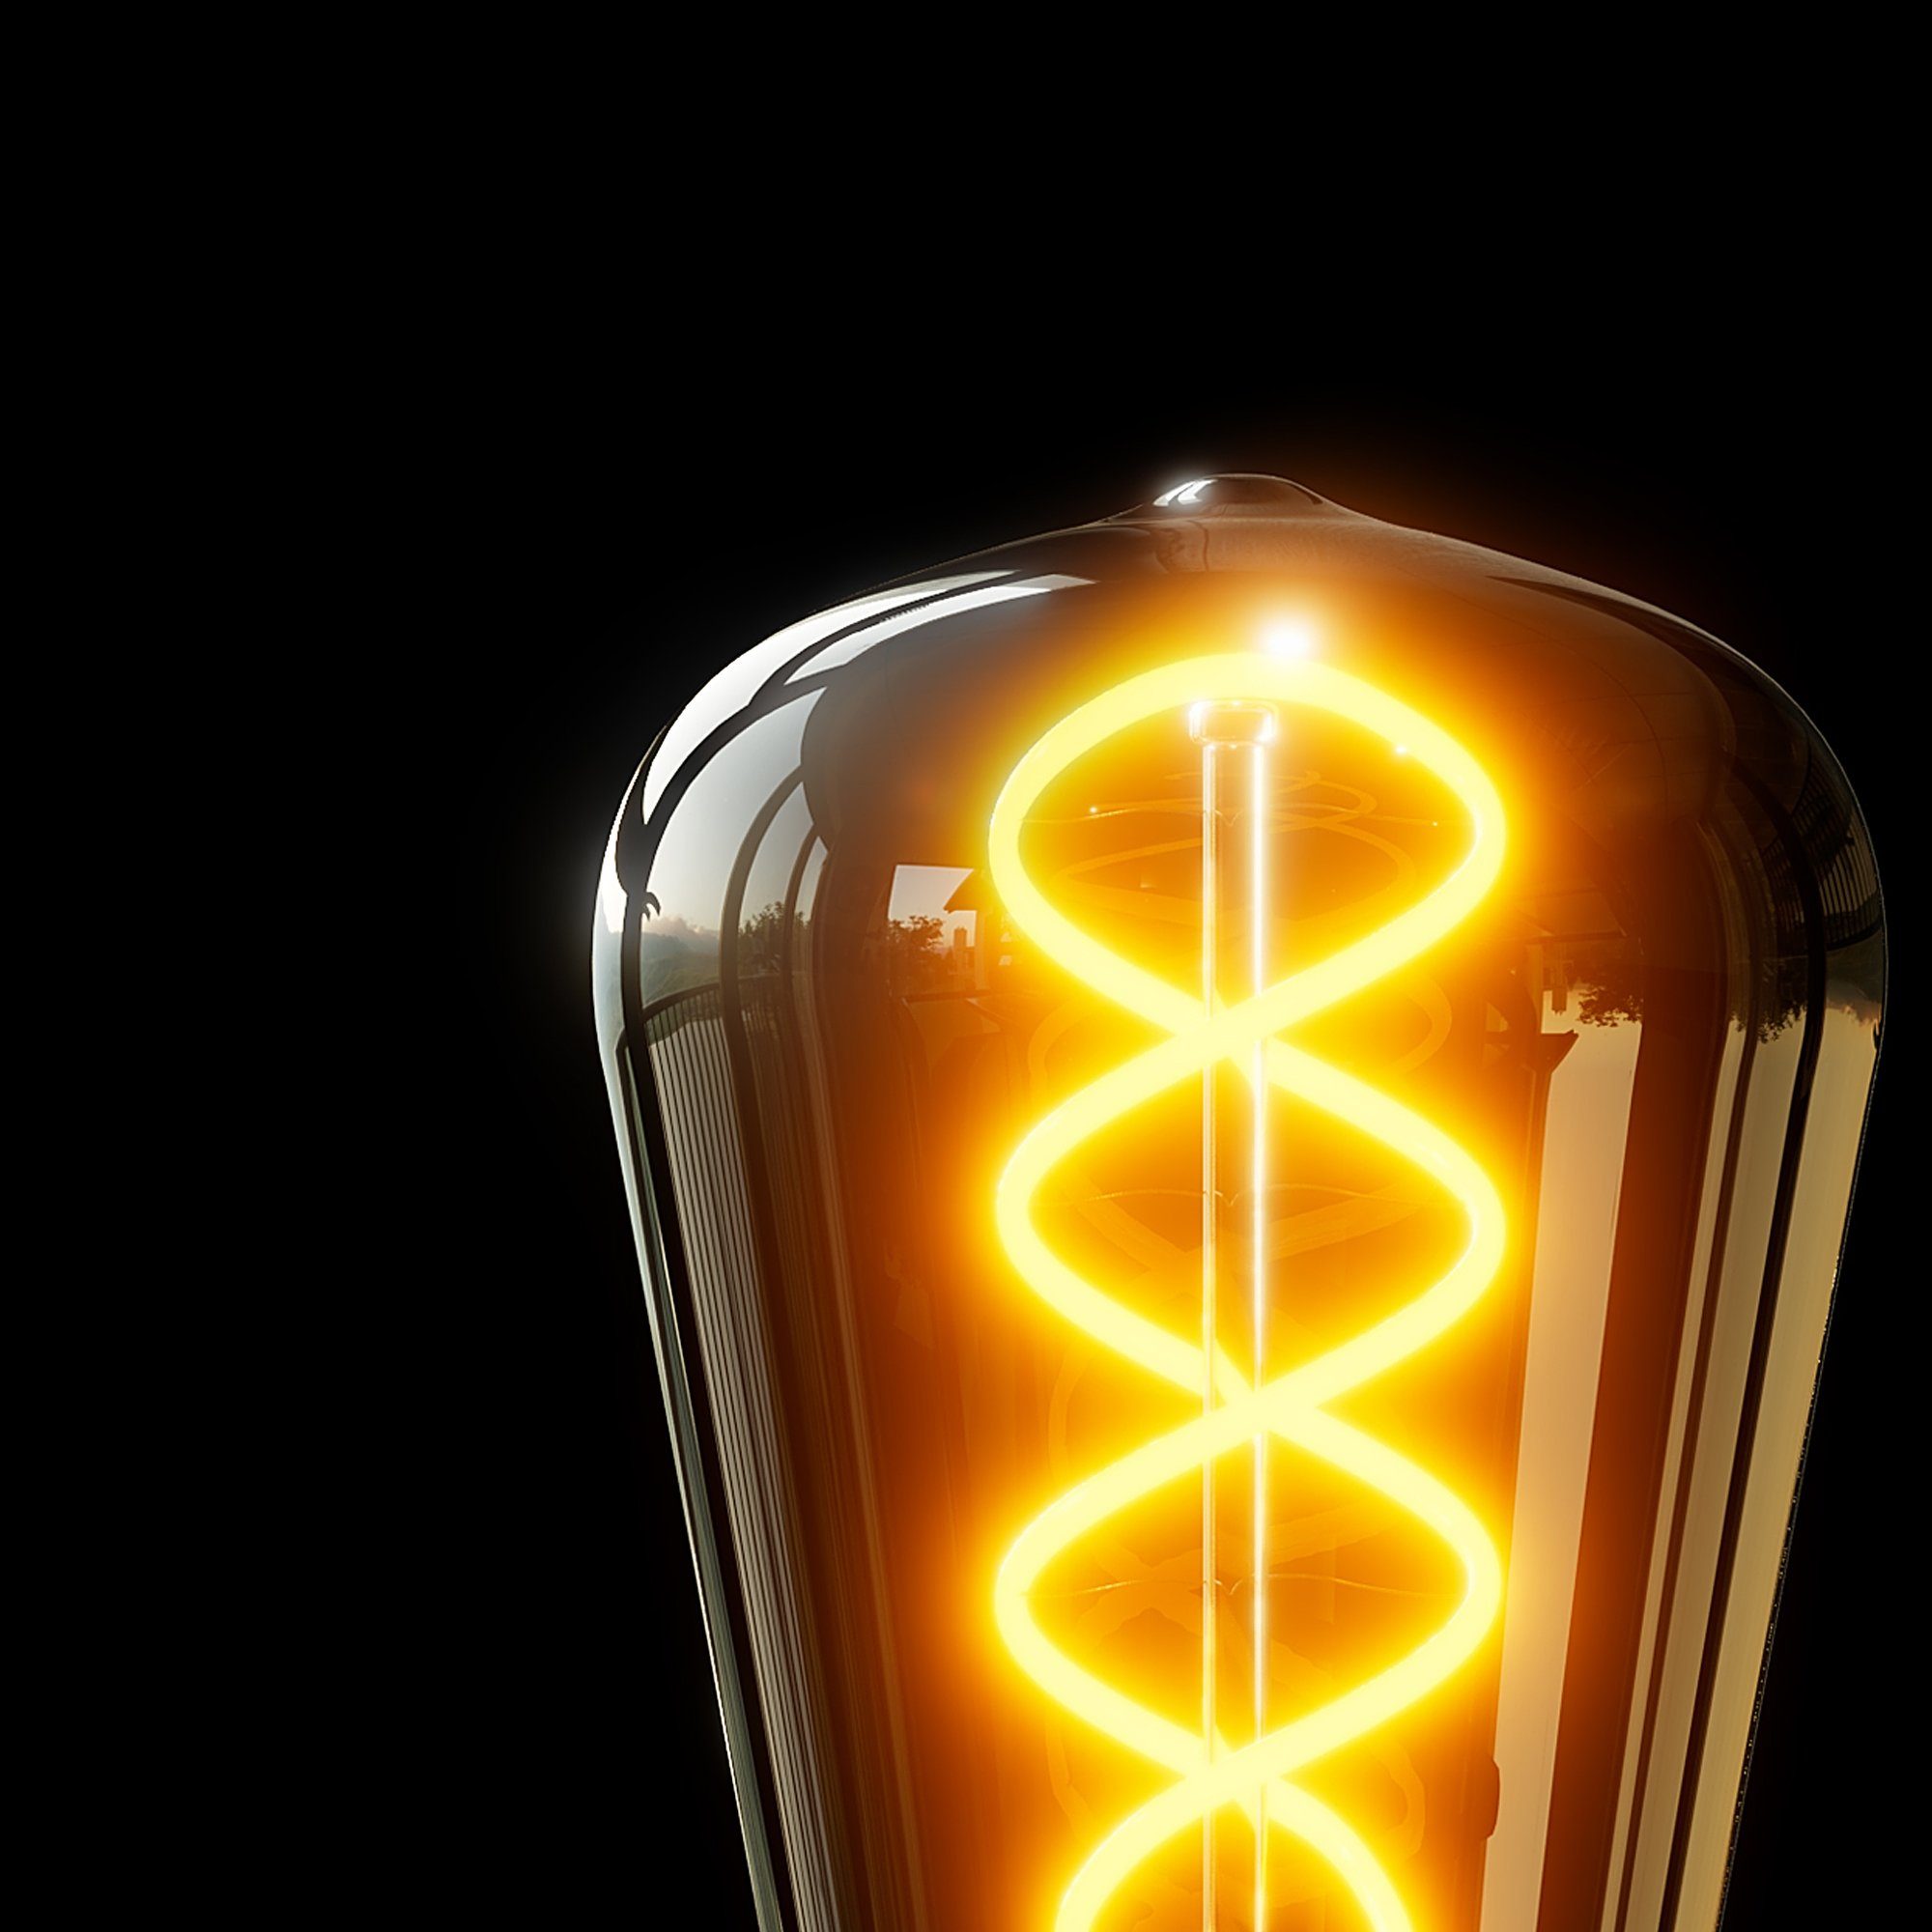 LED Edison Bilderleuchte & mit LED, Wand- SSC-LUXon Kabel & Stecker Warmweiß schwarz Tischlampe mit NAMBI